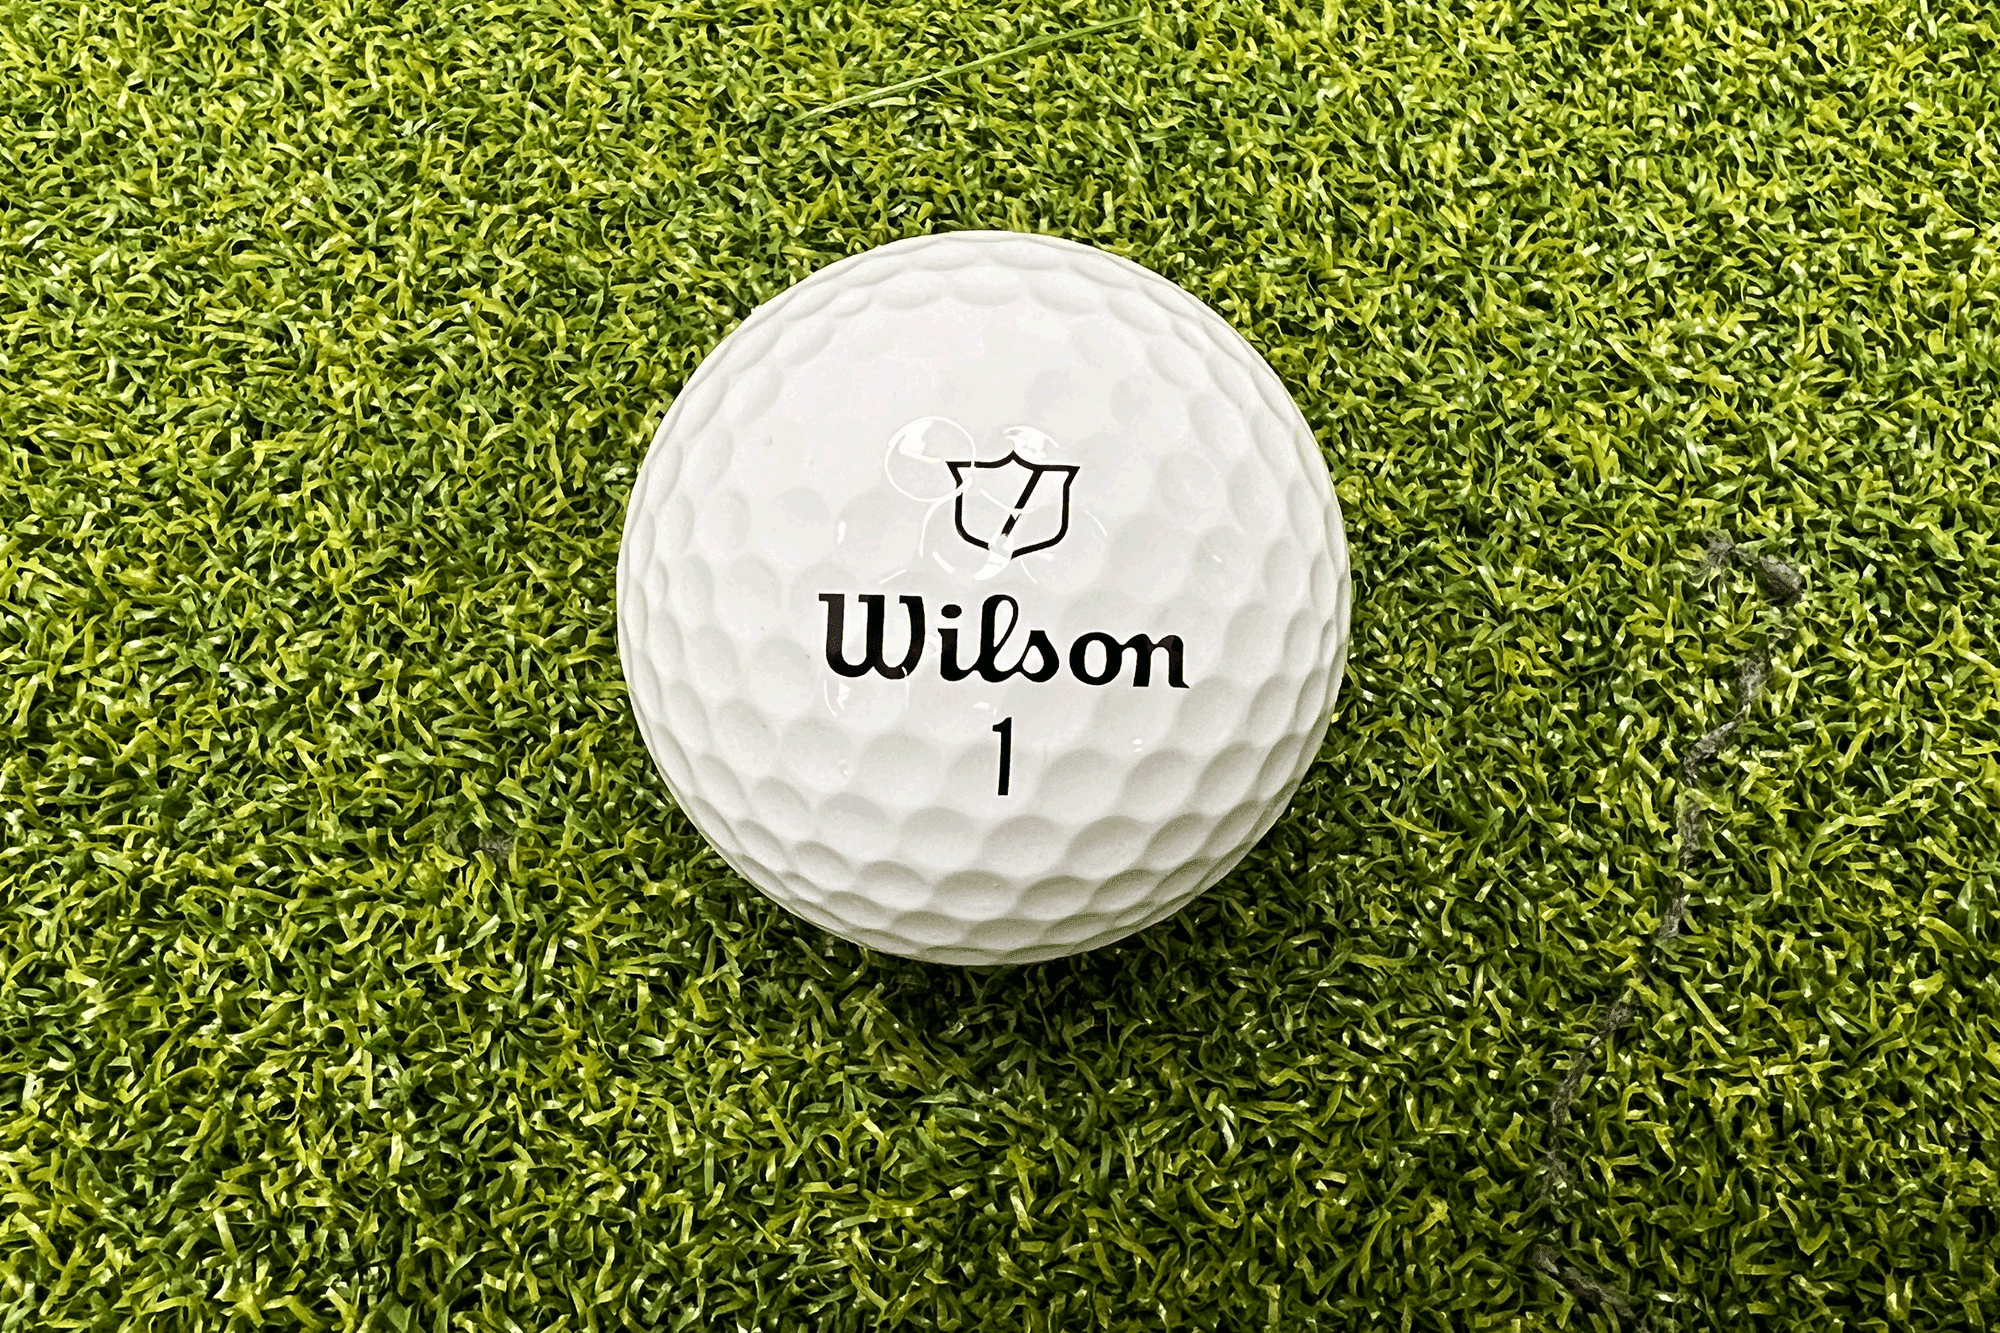 Wilson Staff Model Golf Ball Review